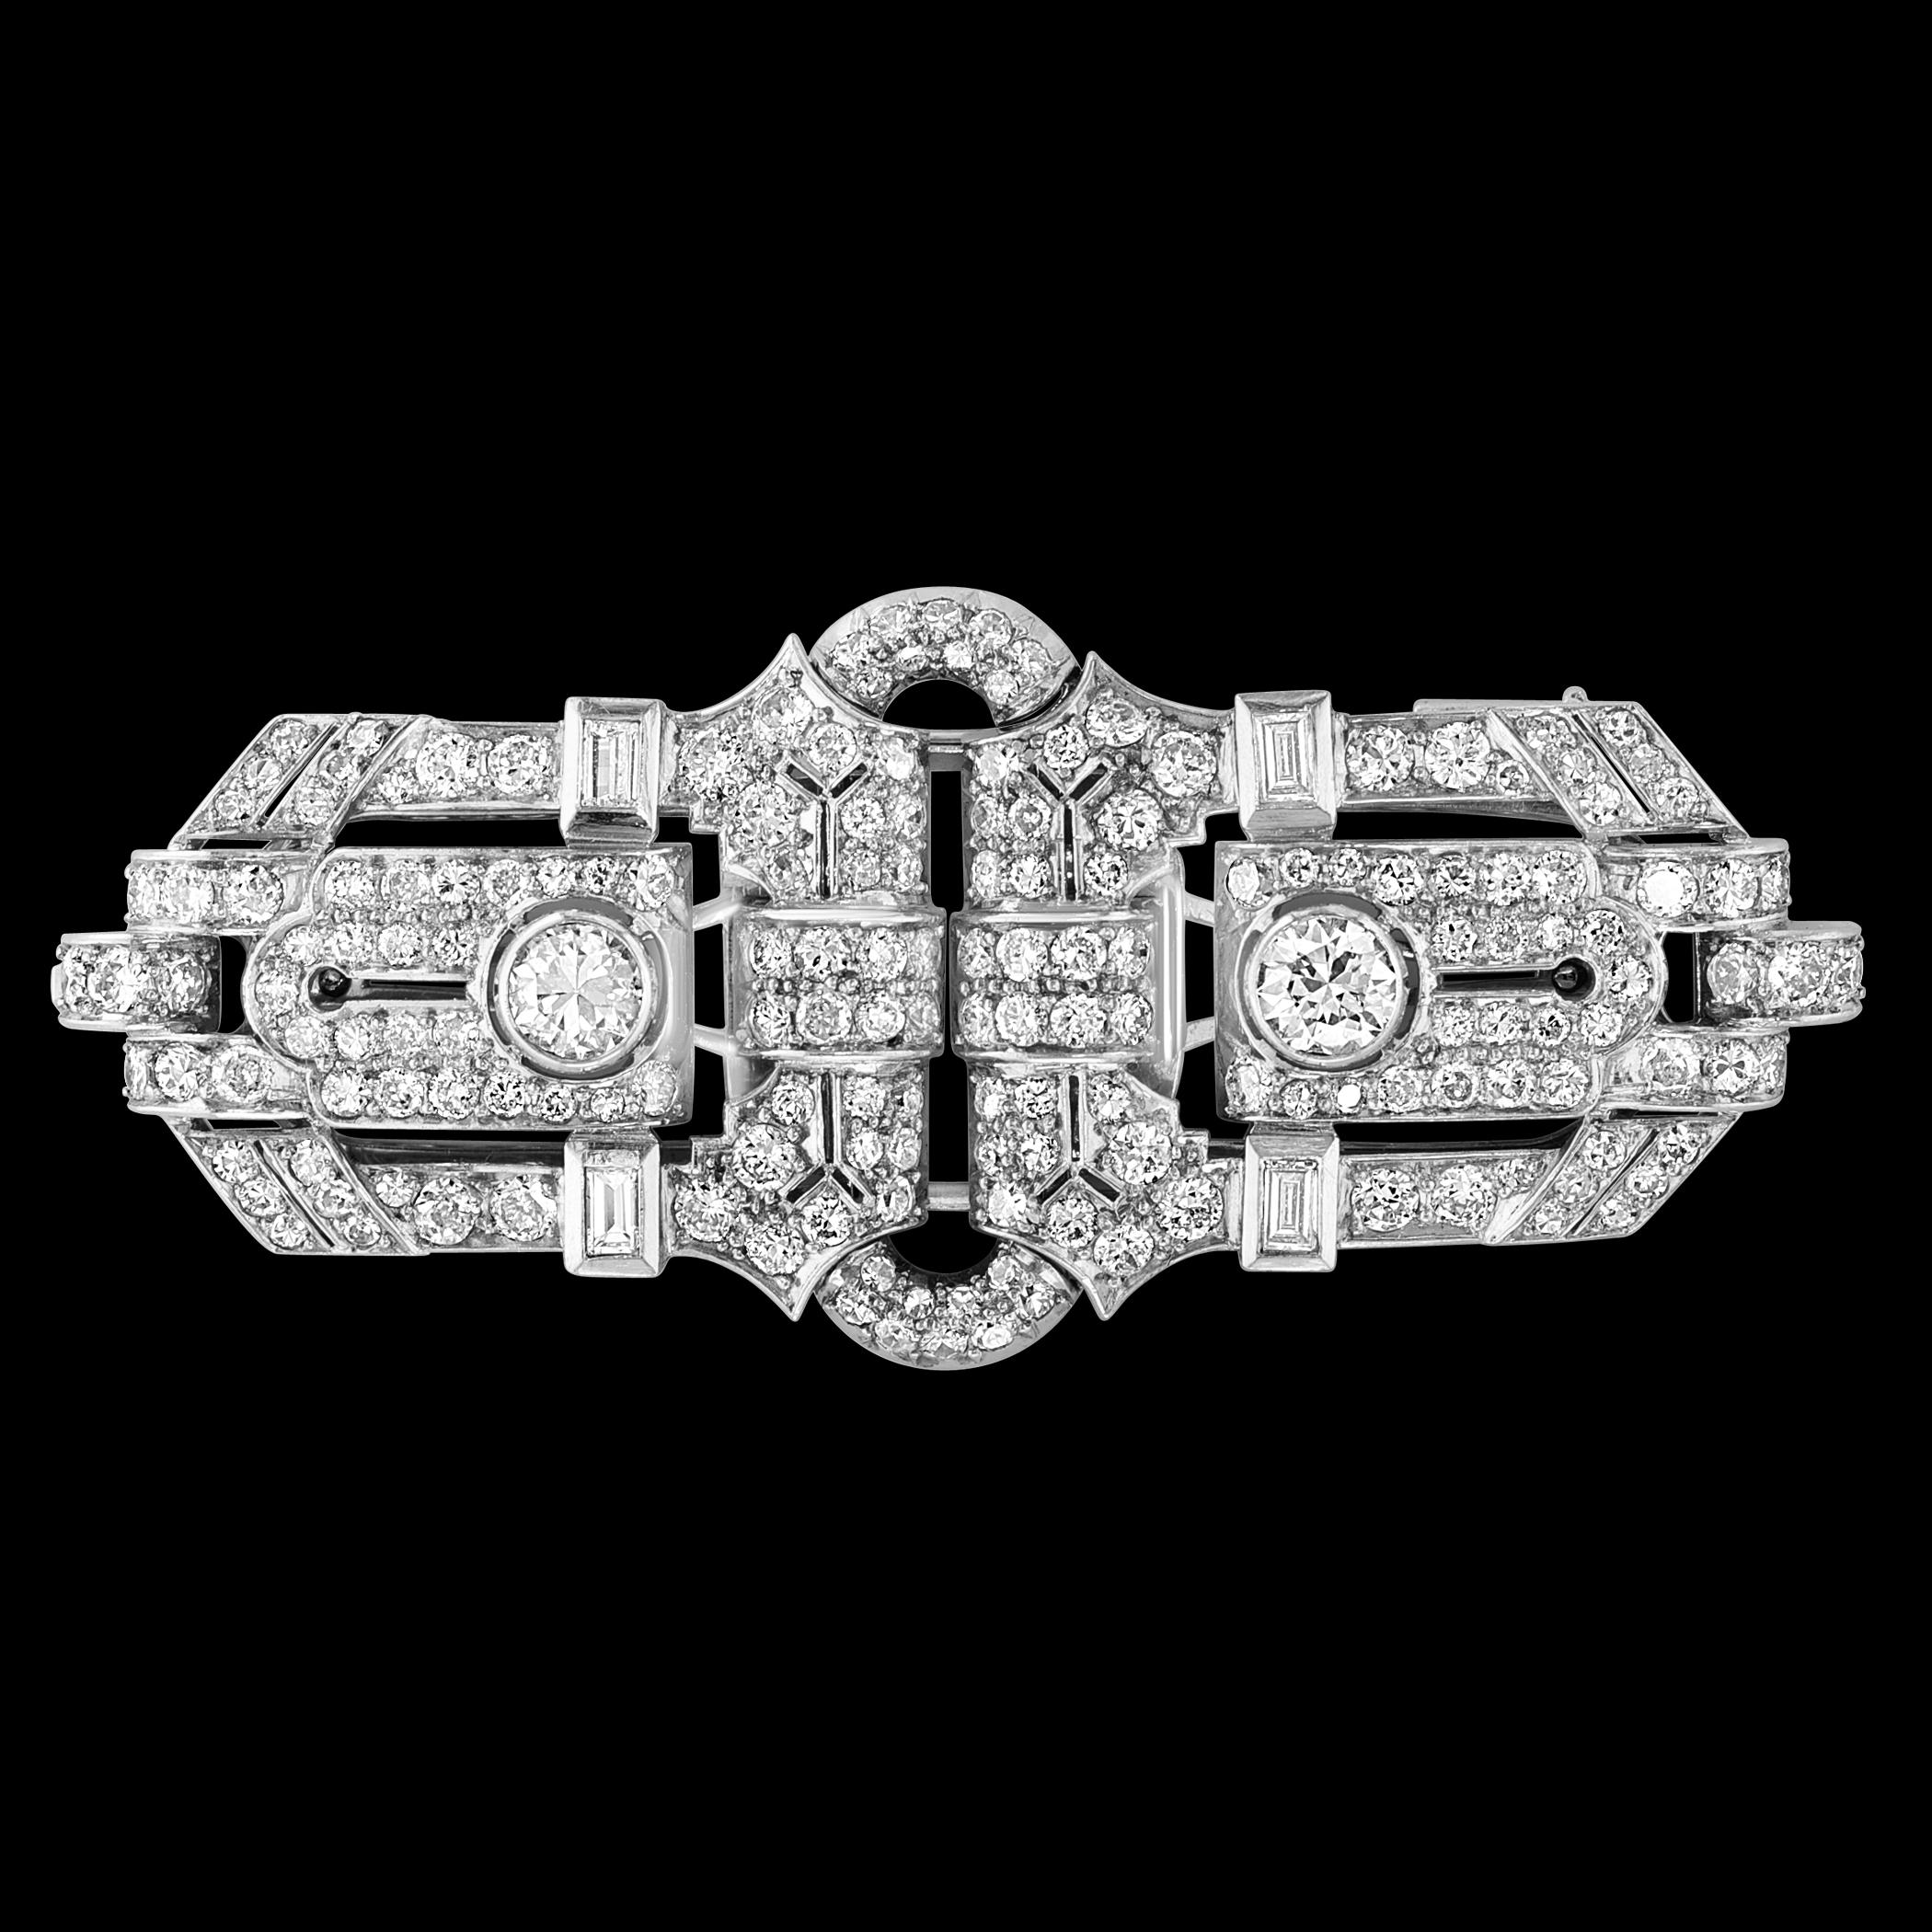 Eine absolut exquisite Anstecknadel aus Platin und Diamanten mit Pelzklammern aus der Zeit des Art déco! Dieses wunderschöne und ungewöhnliche Stück besteht aus 26 g  Platin und mit ca. 12 Karat funkelnden Diamanten besetzt. Bestehend aus 2